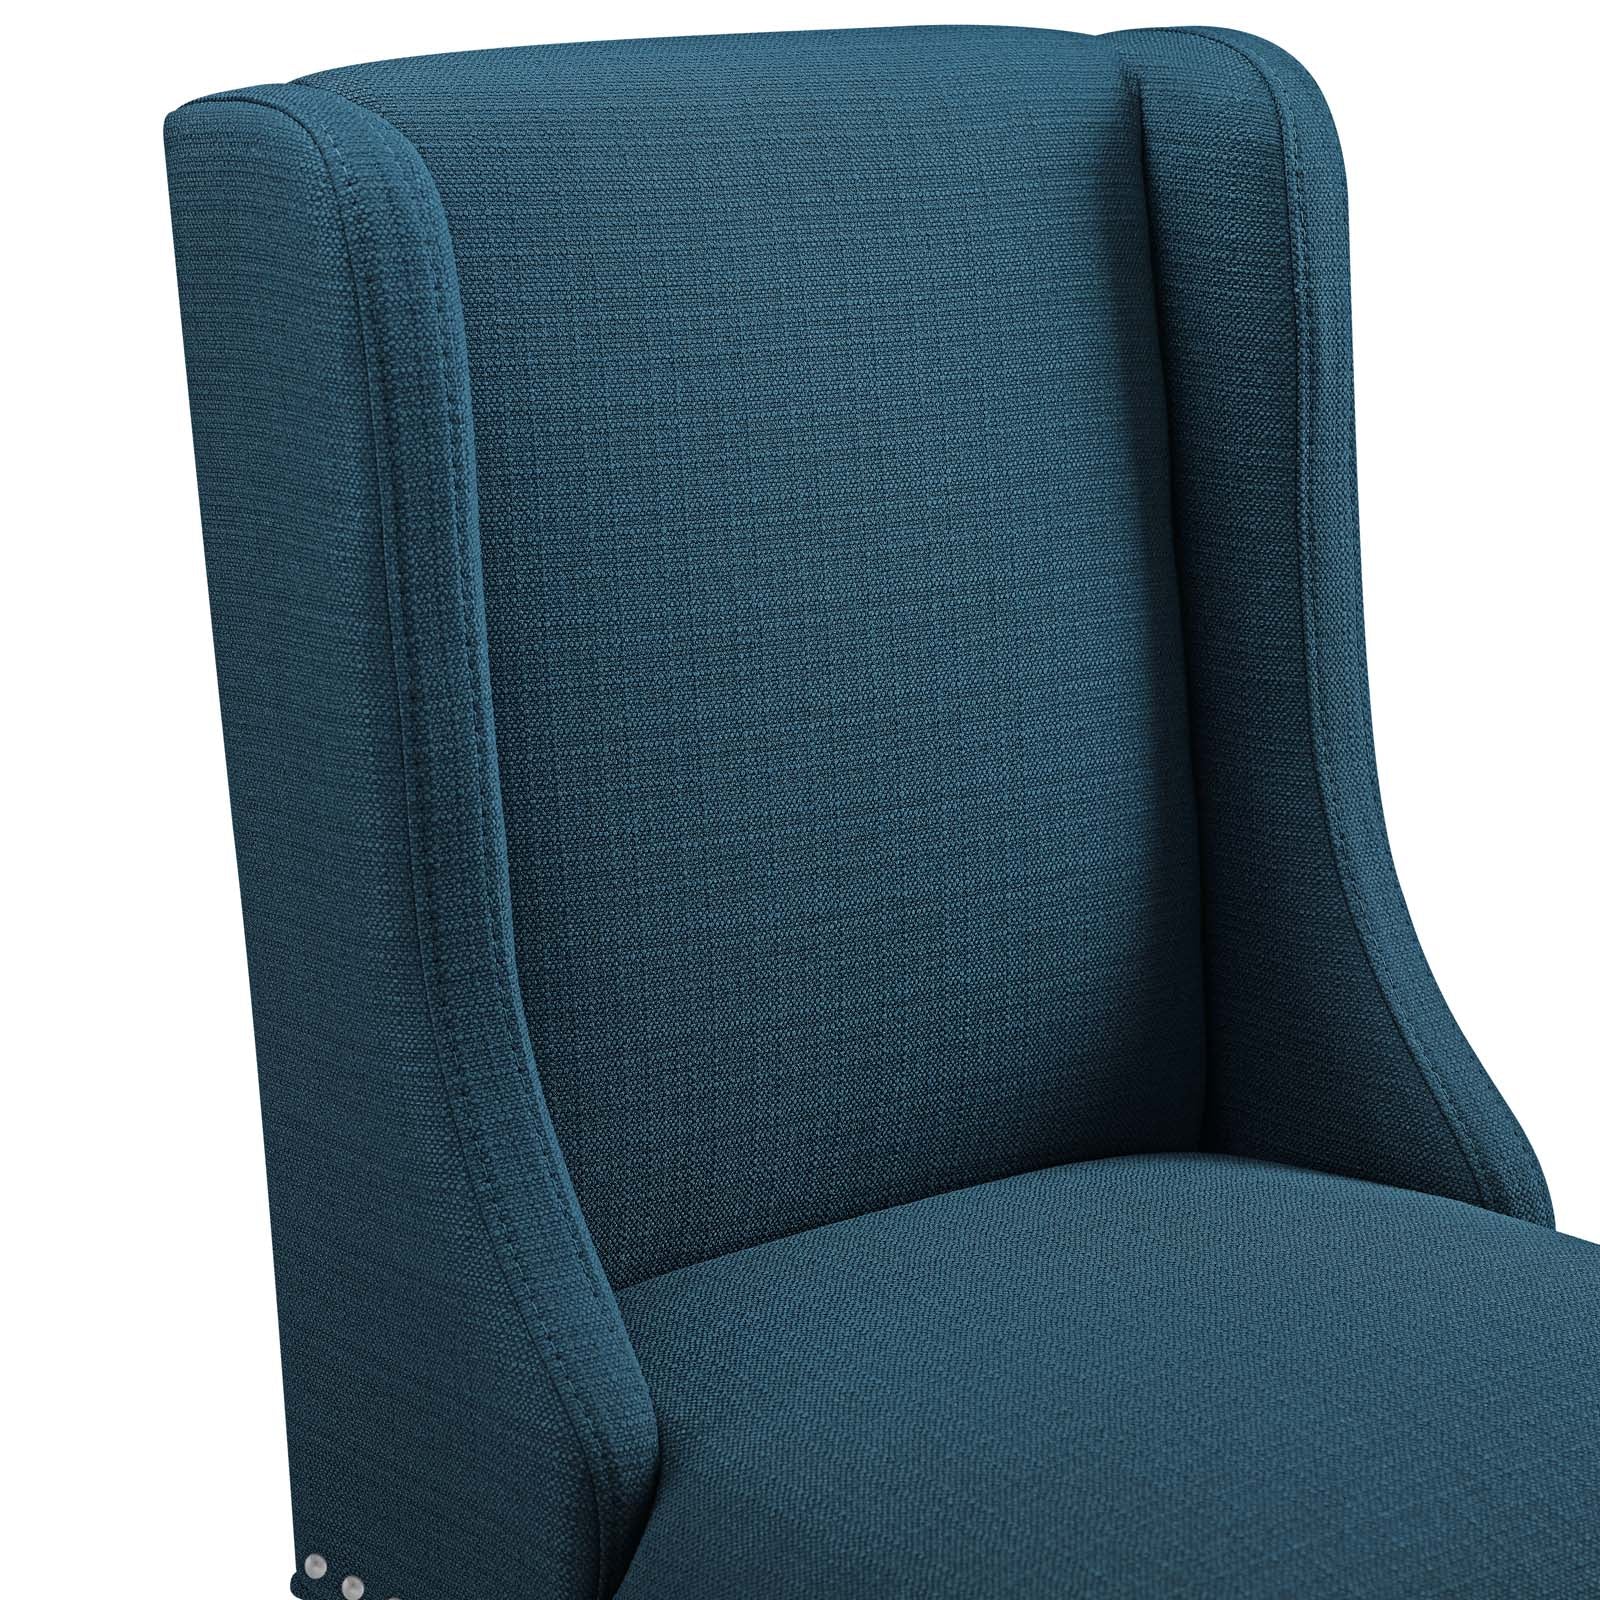 Modway Barstools - Baron Upholstered Fabric Counter Stool Azure